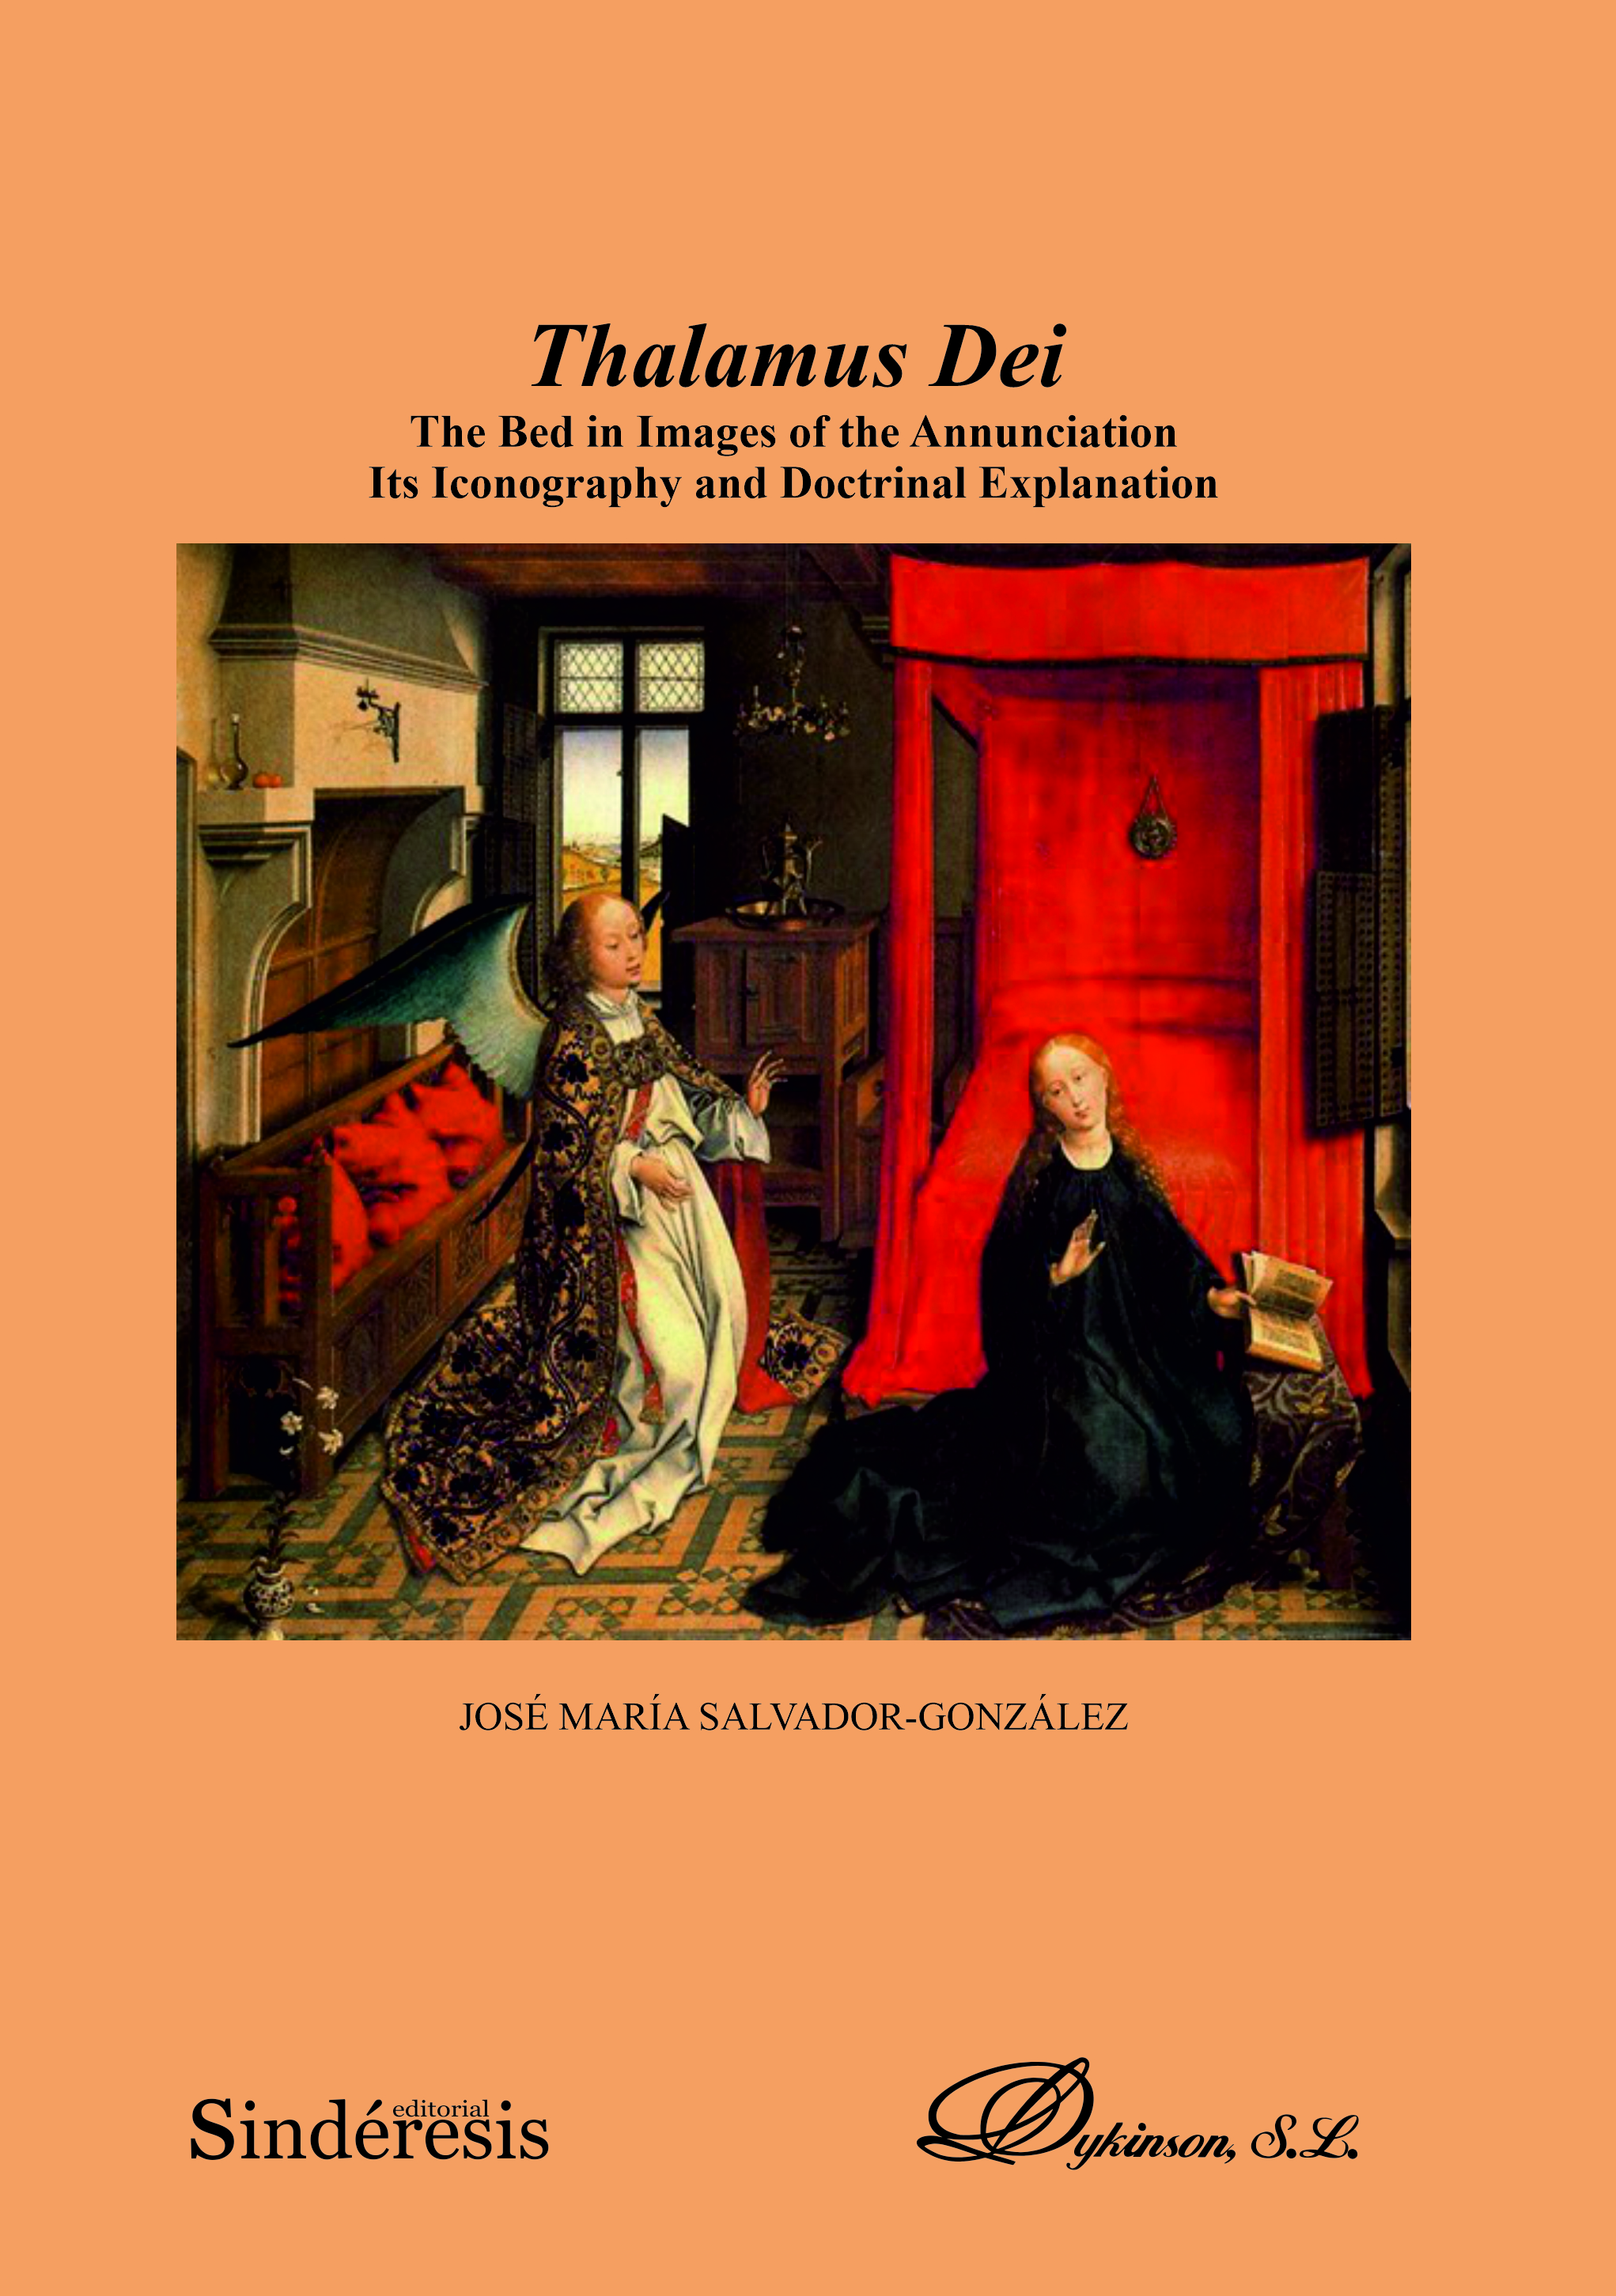 Thalamus Dei